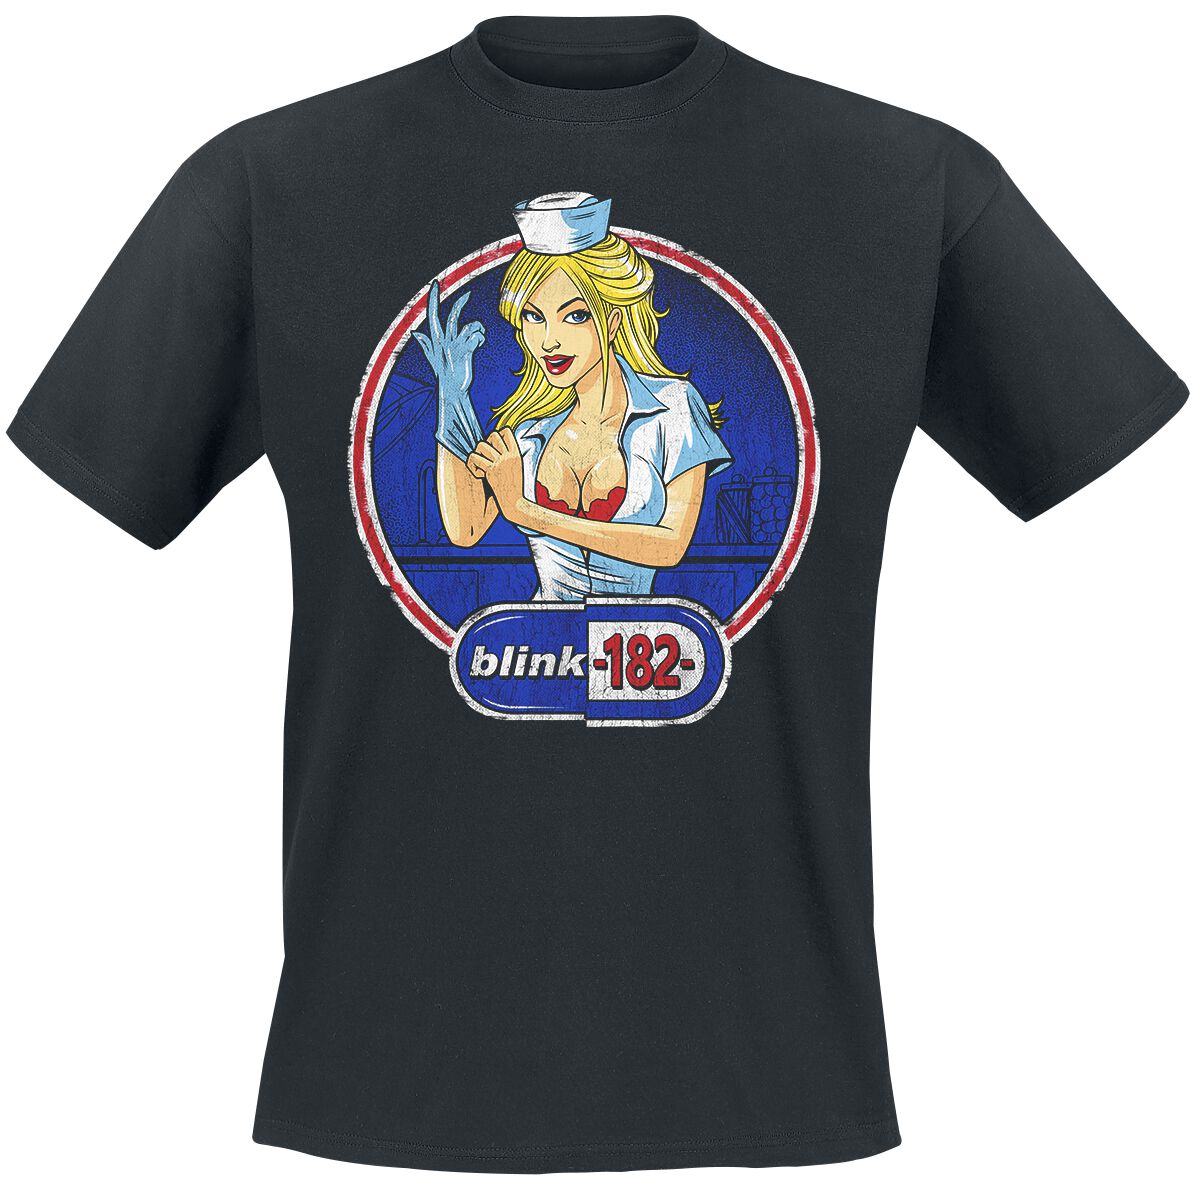 Blink-182 T-Shirt - Enema Nurse - S bis 3XL - für Männer - Größe M - schwarz  - Lizenziertes Merchandise!